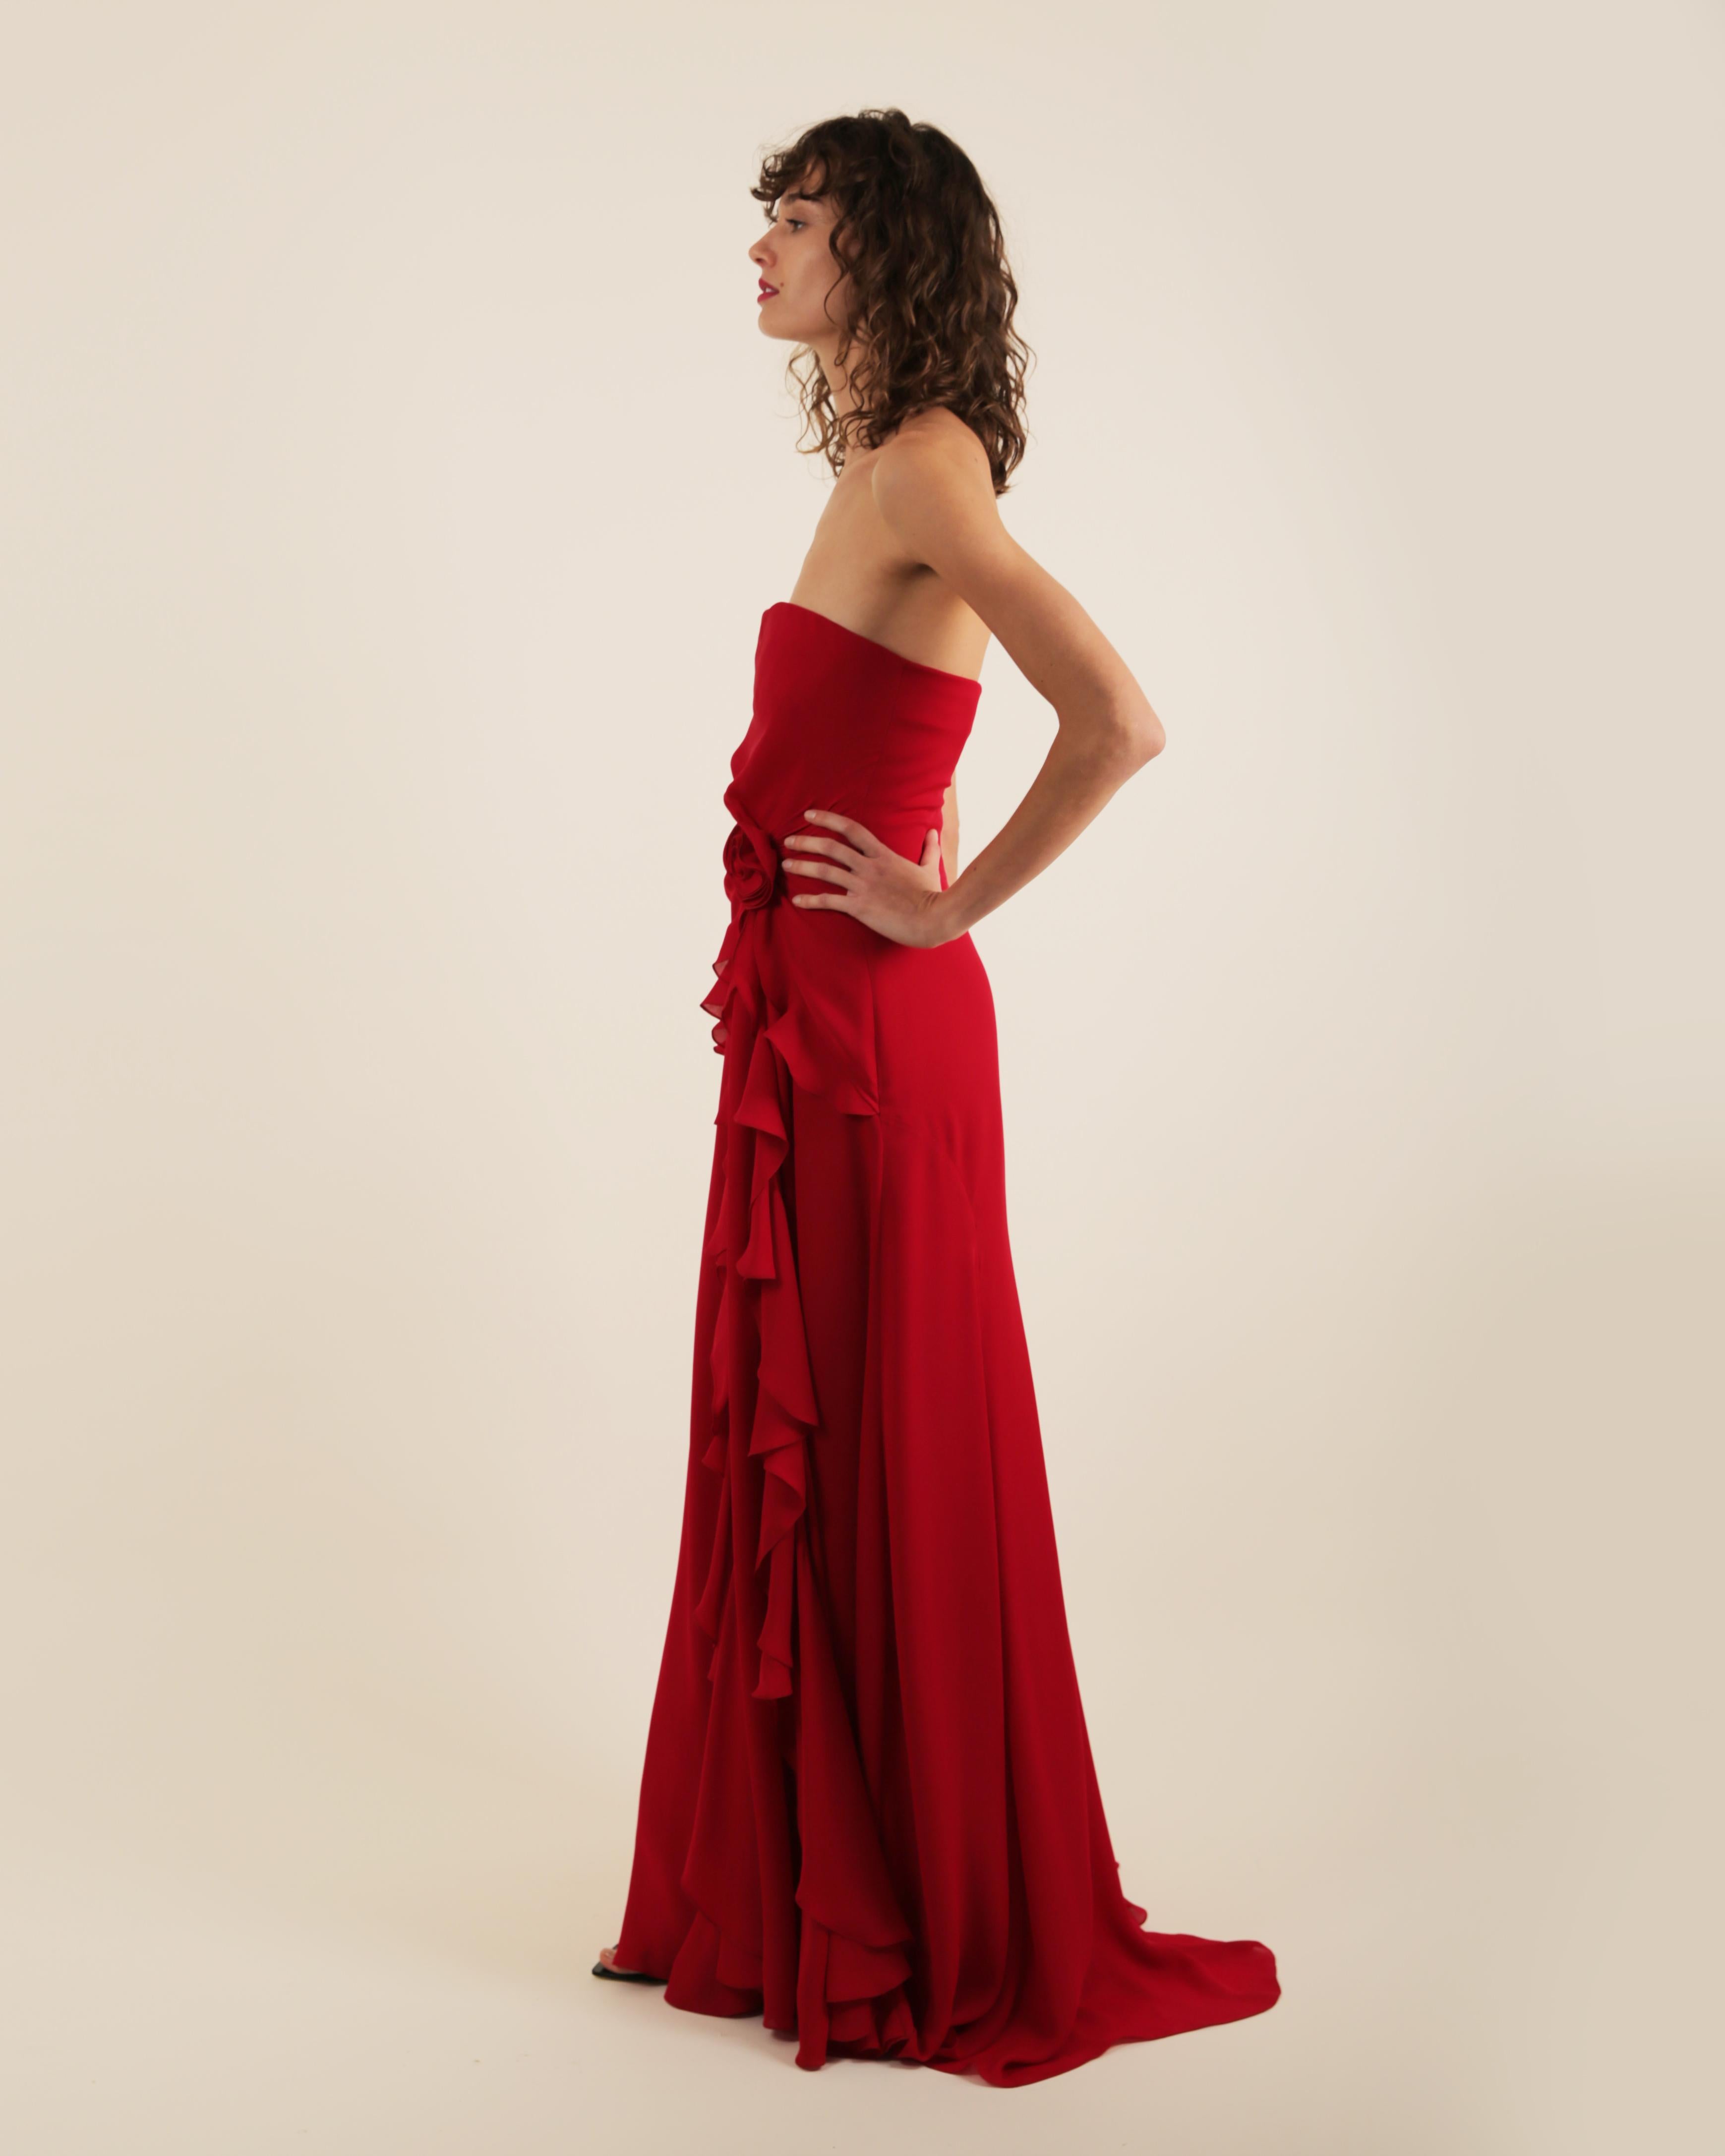 Ralph Lauren SS 2013 strapless bustier red sweetheart neck train silk gown dress 3